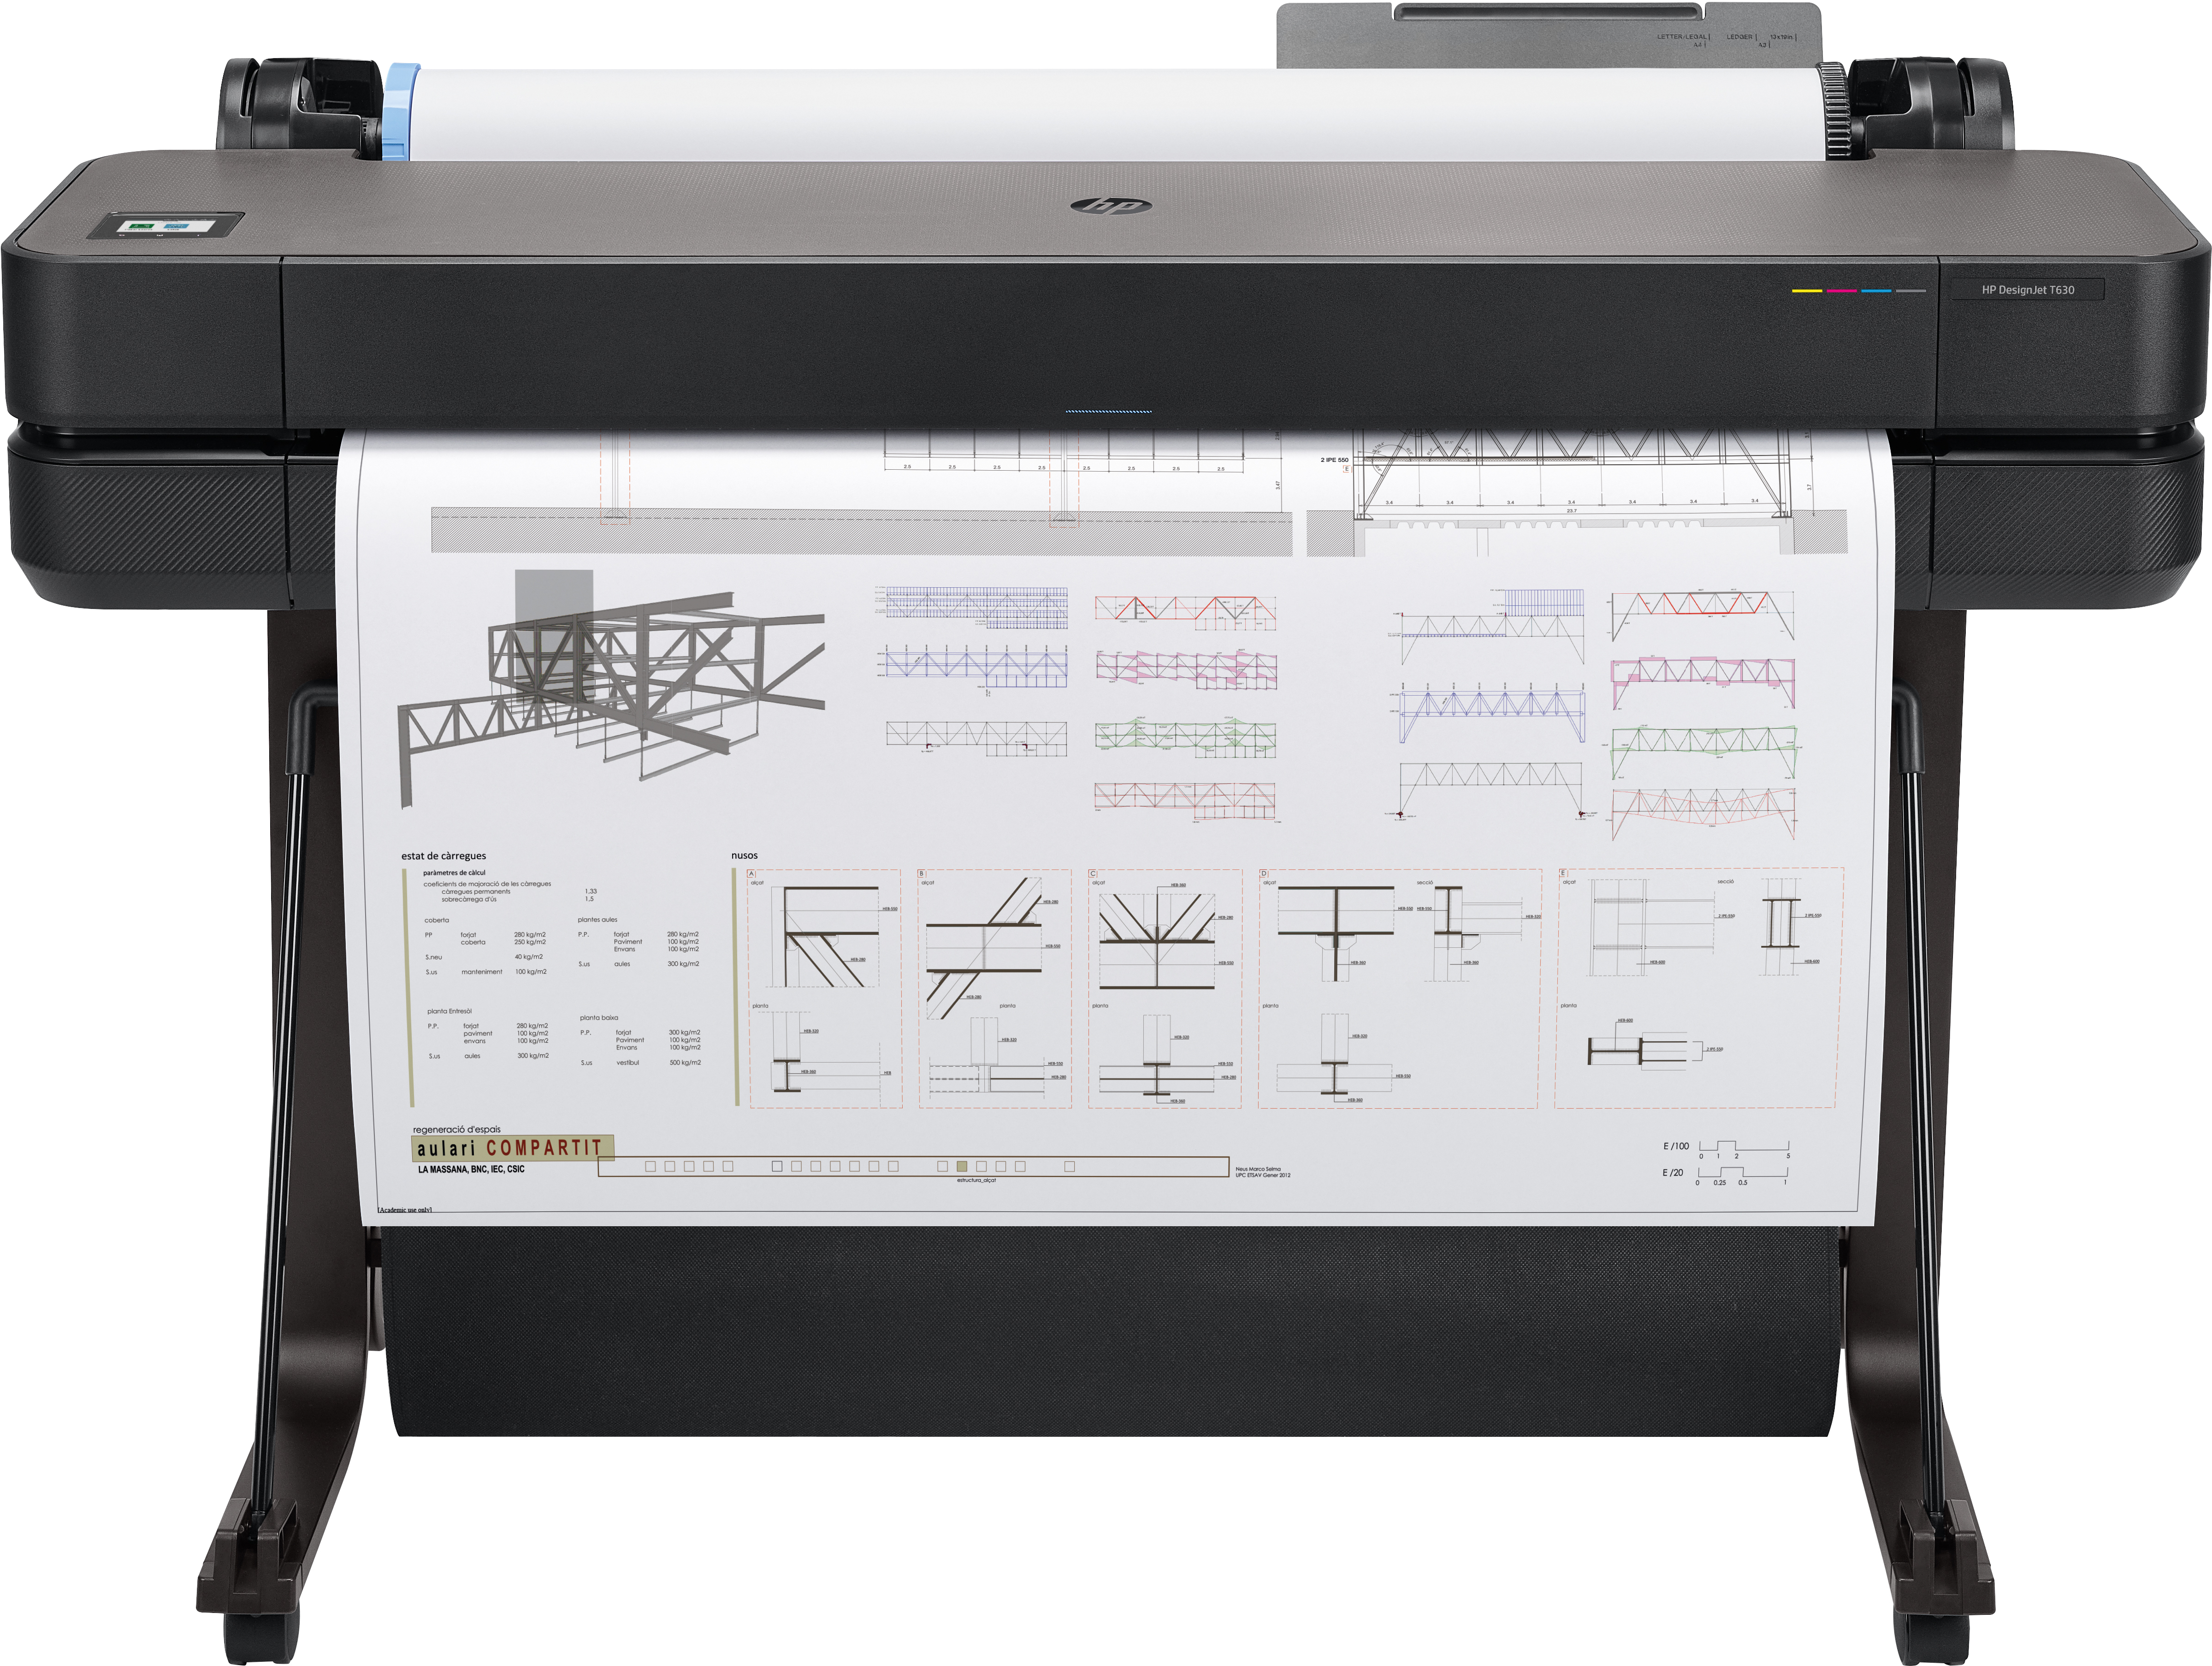 HP Designjet T630 stampante grandi formati Getto termico d'inchiostro A colori 2400 x 1200 DPI 914 1897 mm [5HB11A]